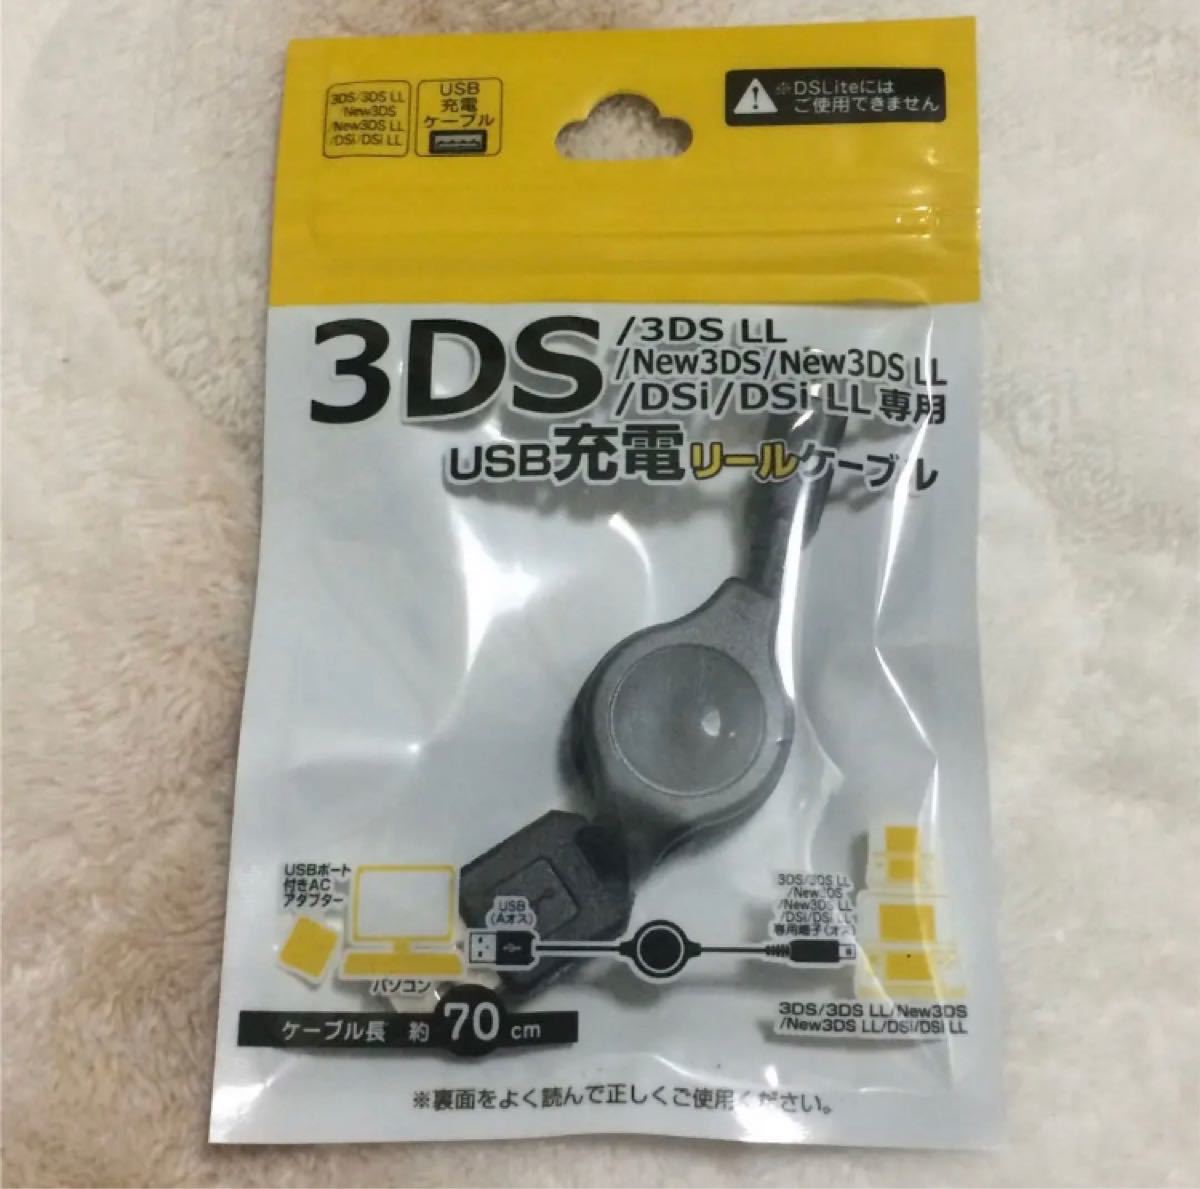 ファッションの 本日発送Nintendo 3DS2DS対応 充電器ケーブル新品r